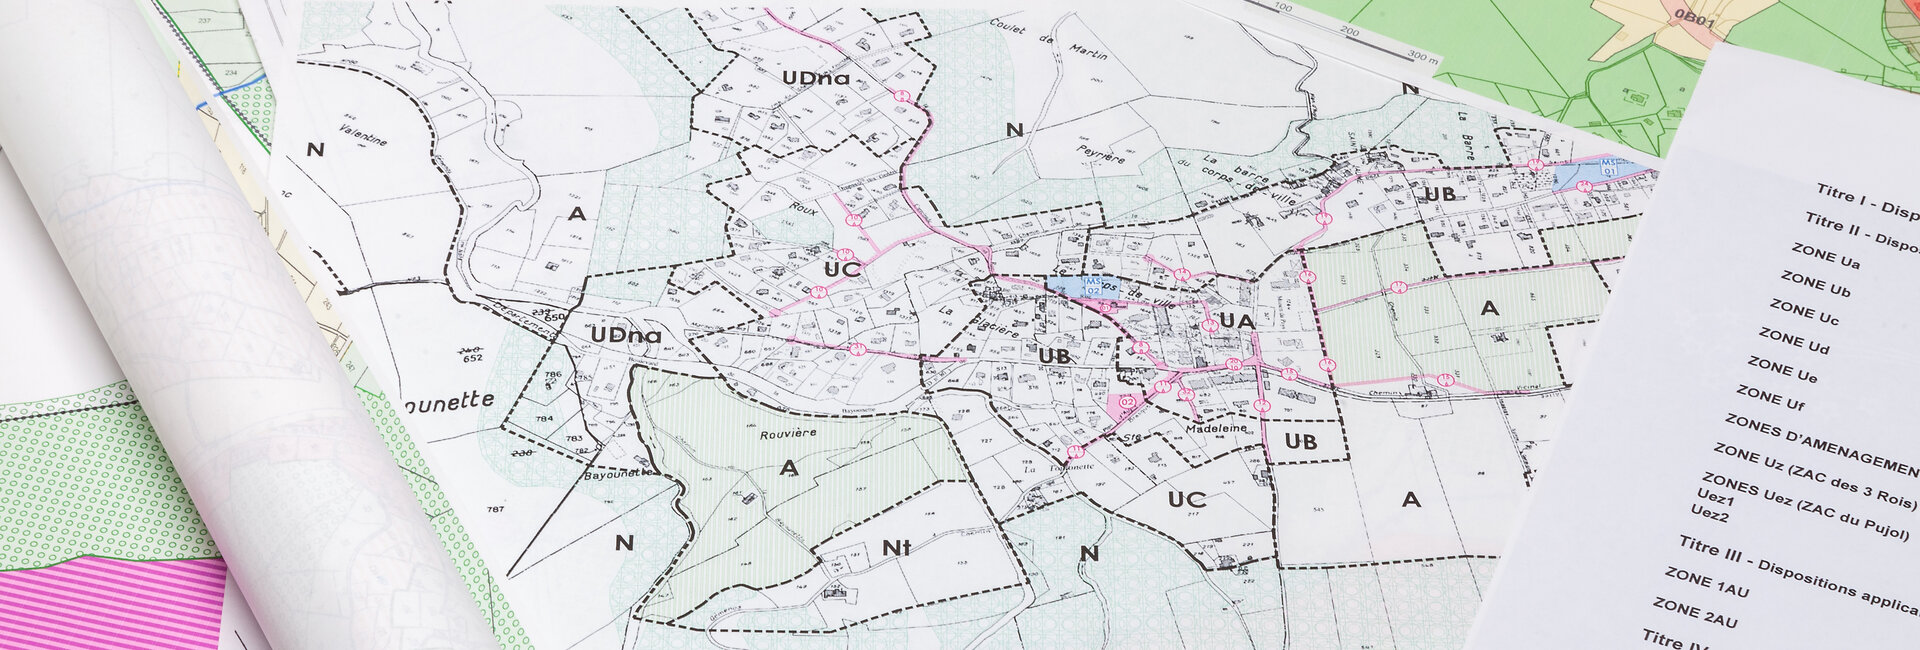 Plan local d'urbanisme de la commune de Thignonville dans le 45